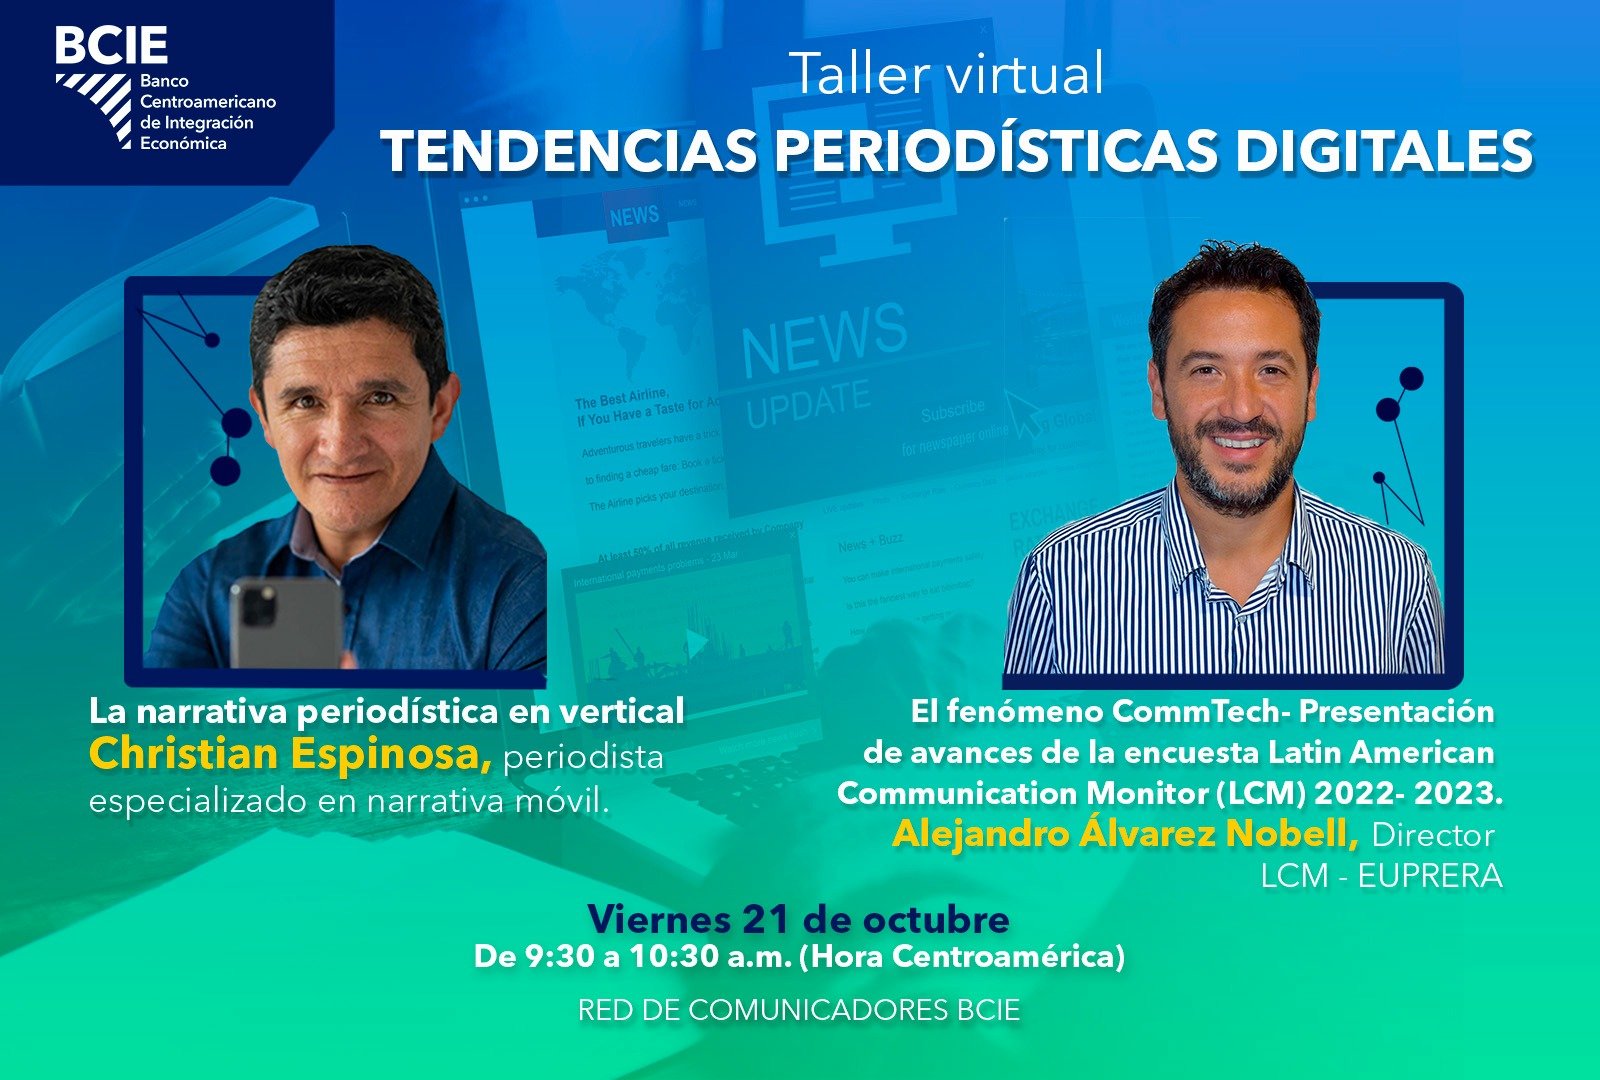 El fenómeno CommTech-Presentación de avances de la encuesta Latin American Communication Monitor (LCM) 2022-2023.